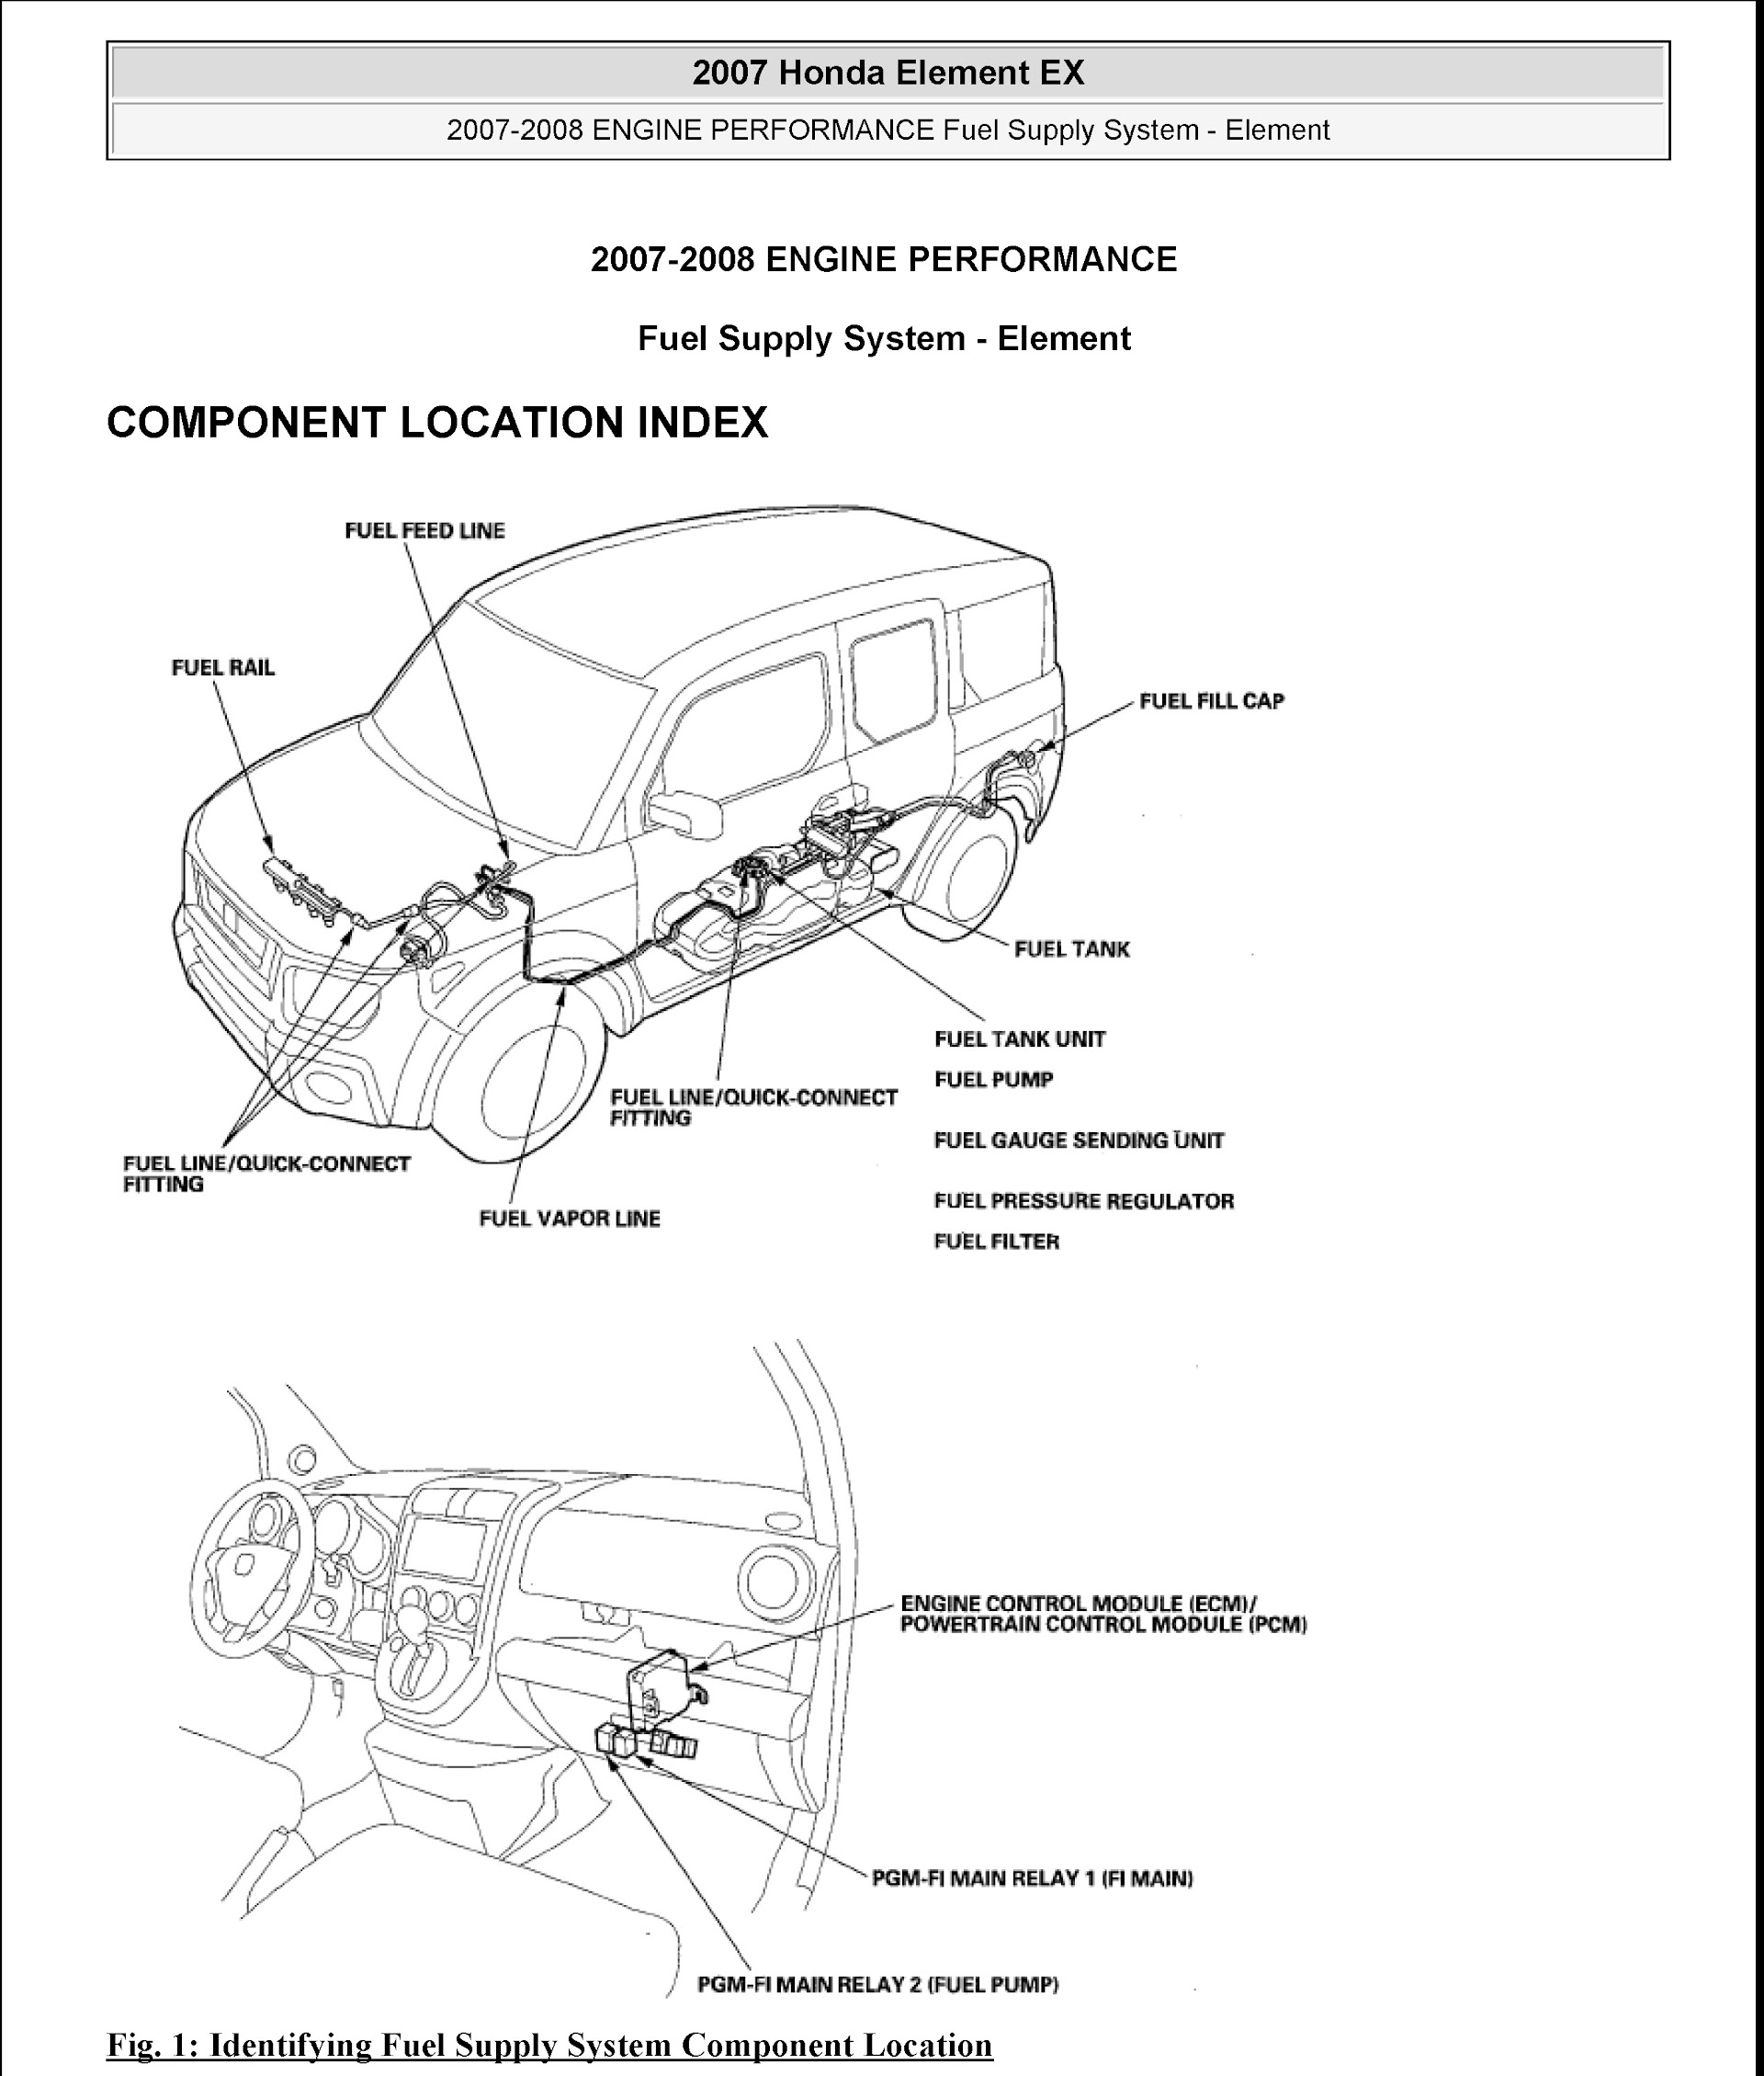 2008 Honda Element Repair Manual, Engine Performance, Fule Supply System